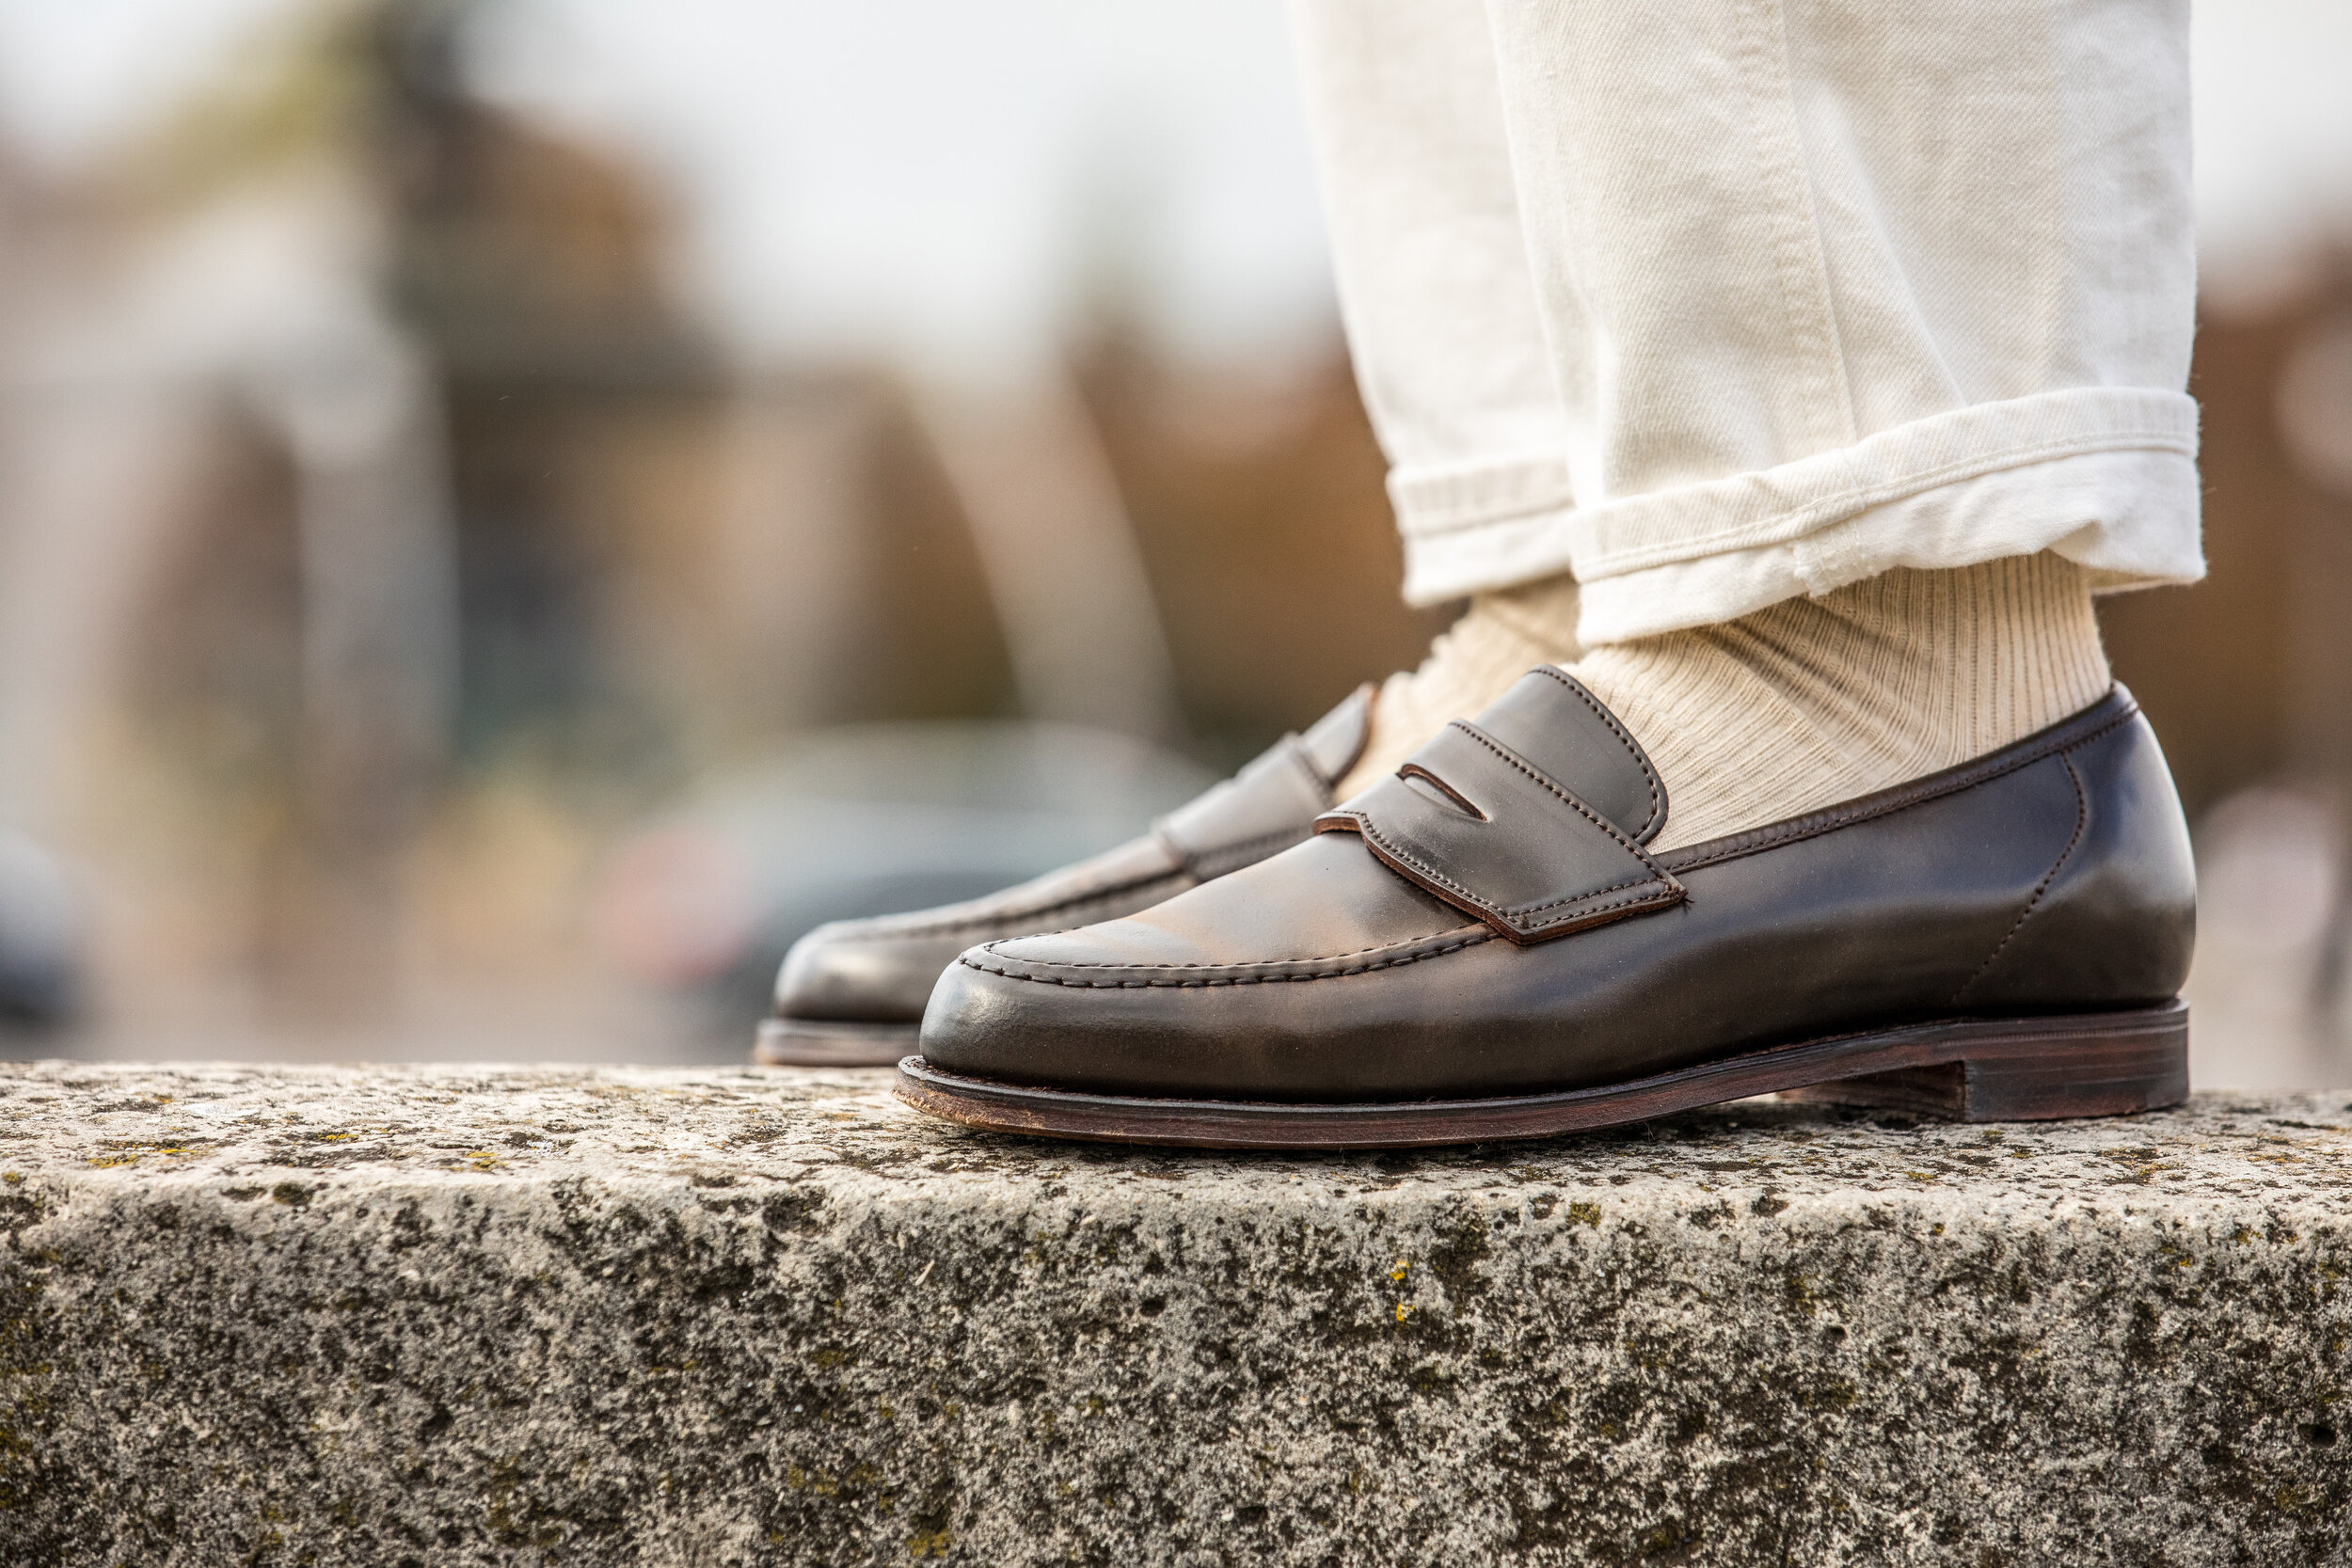 Crockett  Jones Harvard cordovan penny loafers — Les Indispensables